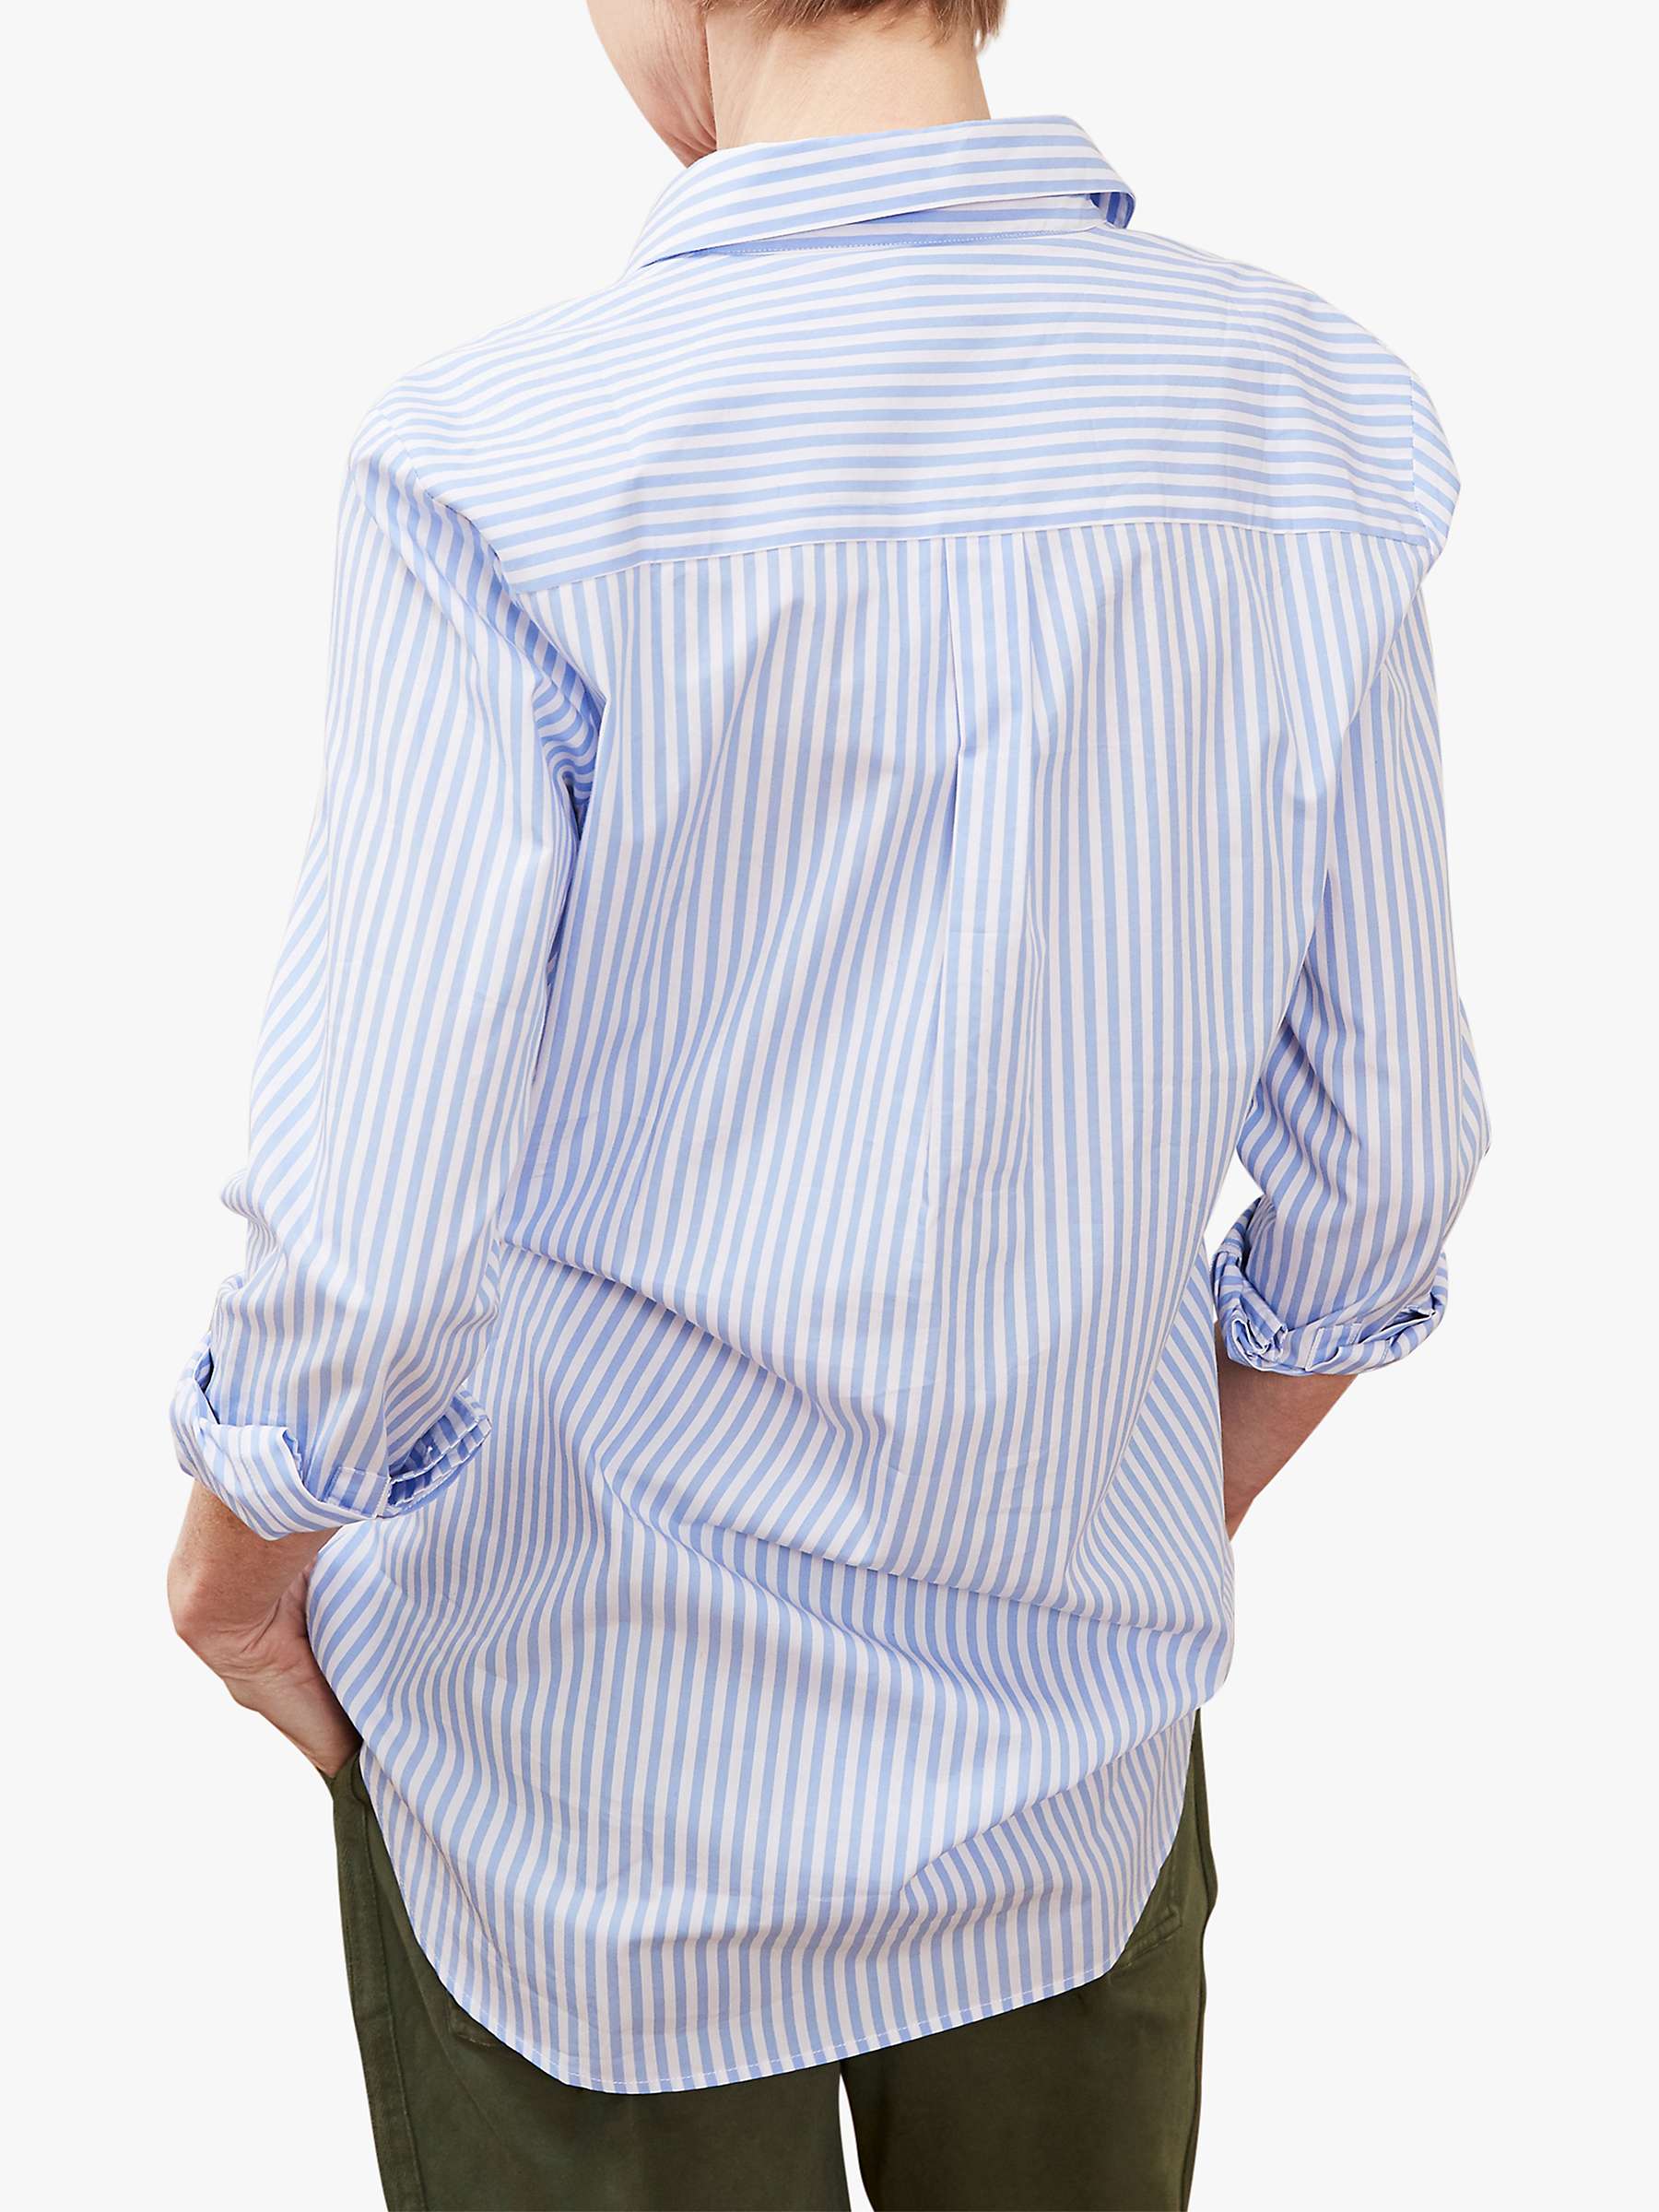 Buy Baukjen Arbor Stripe Cotton Shirt, Sky Blue/White Online at johnlewis.com